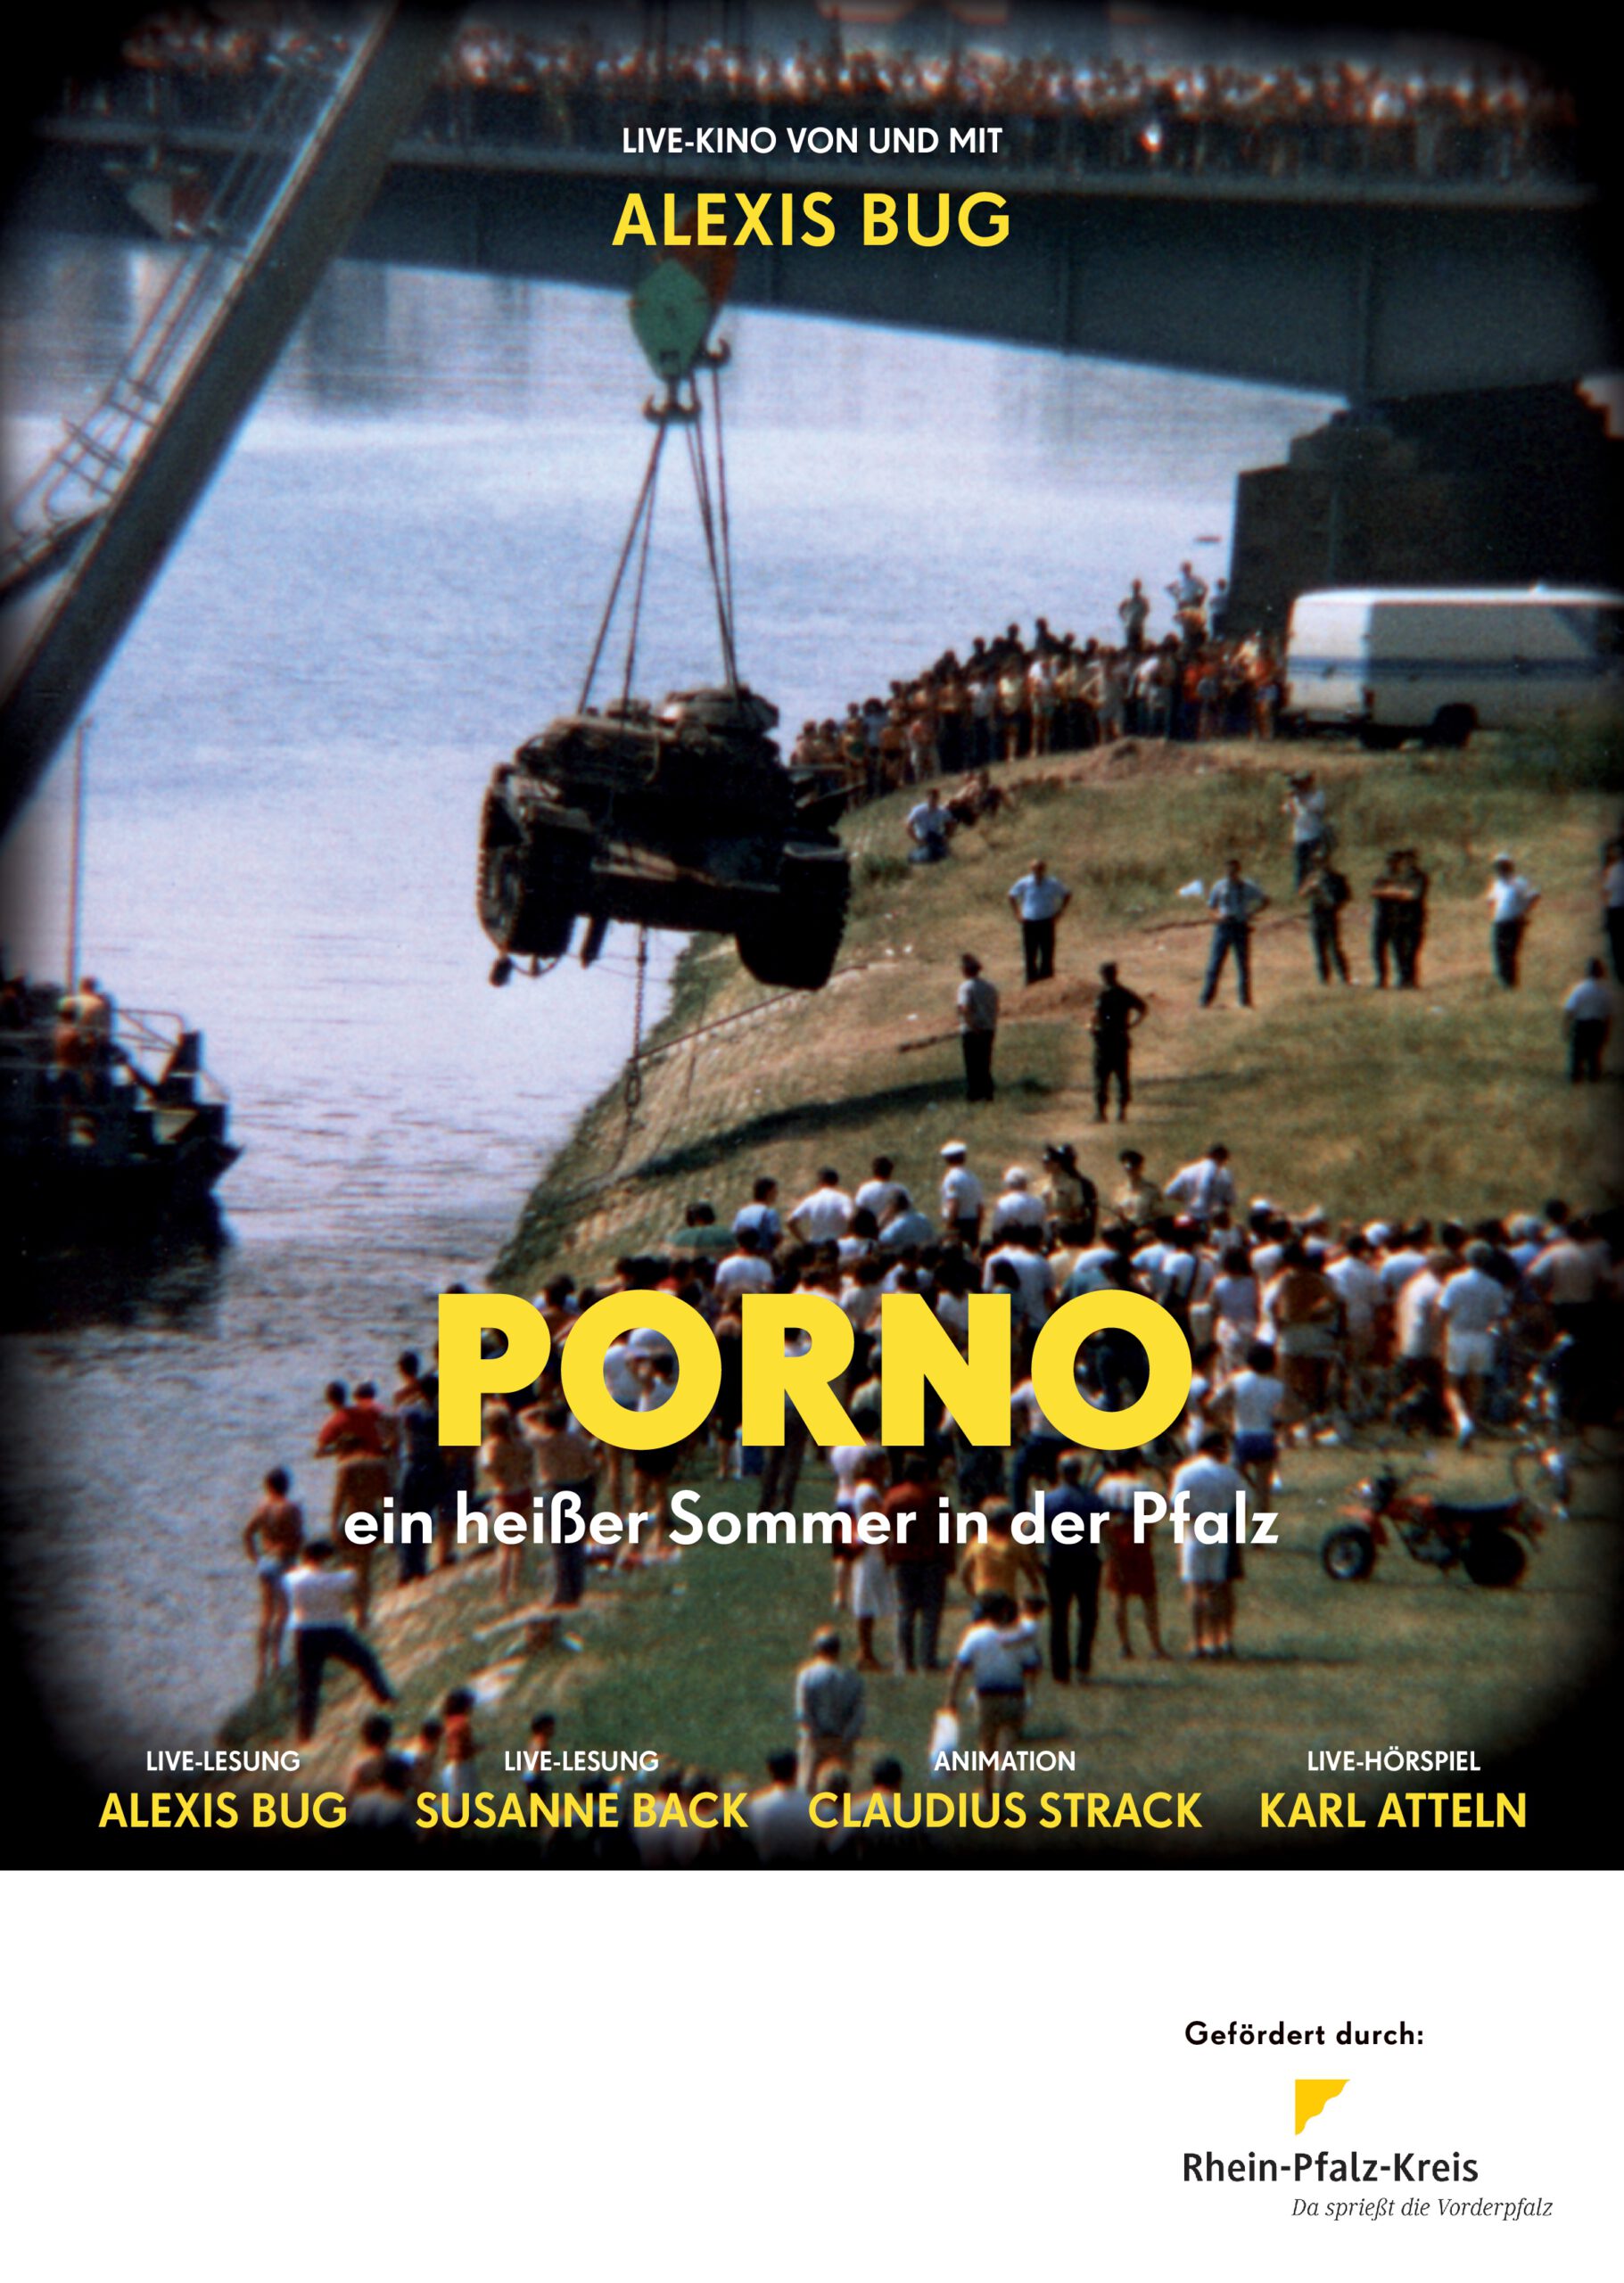 Porno - Ein heißer Sommer in der Pfalz - entfällt